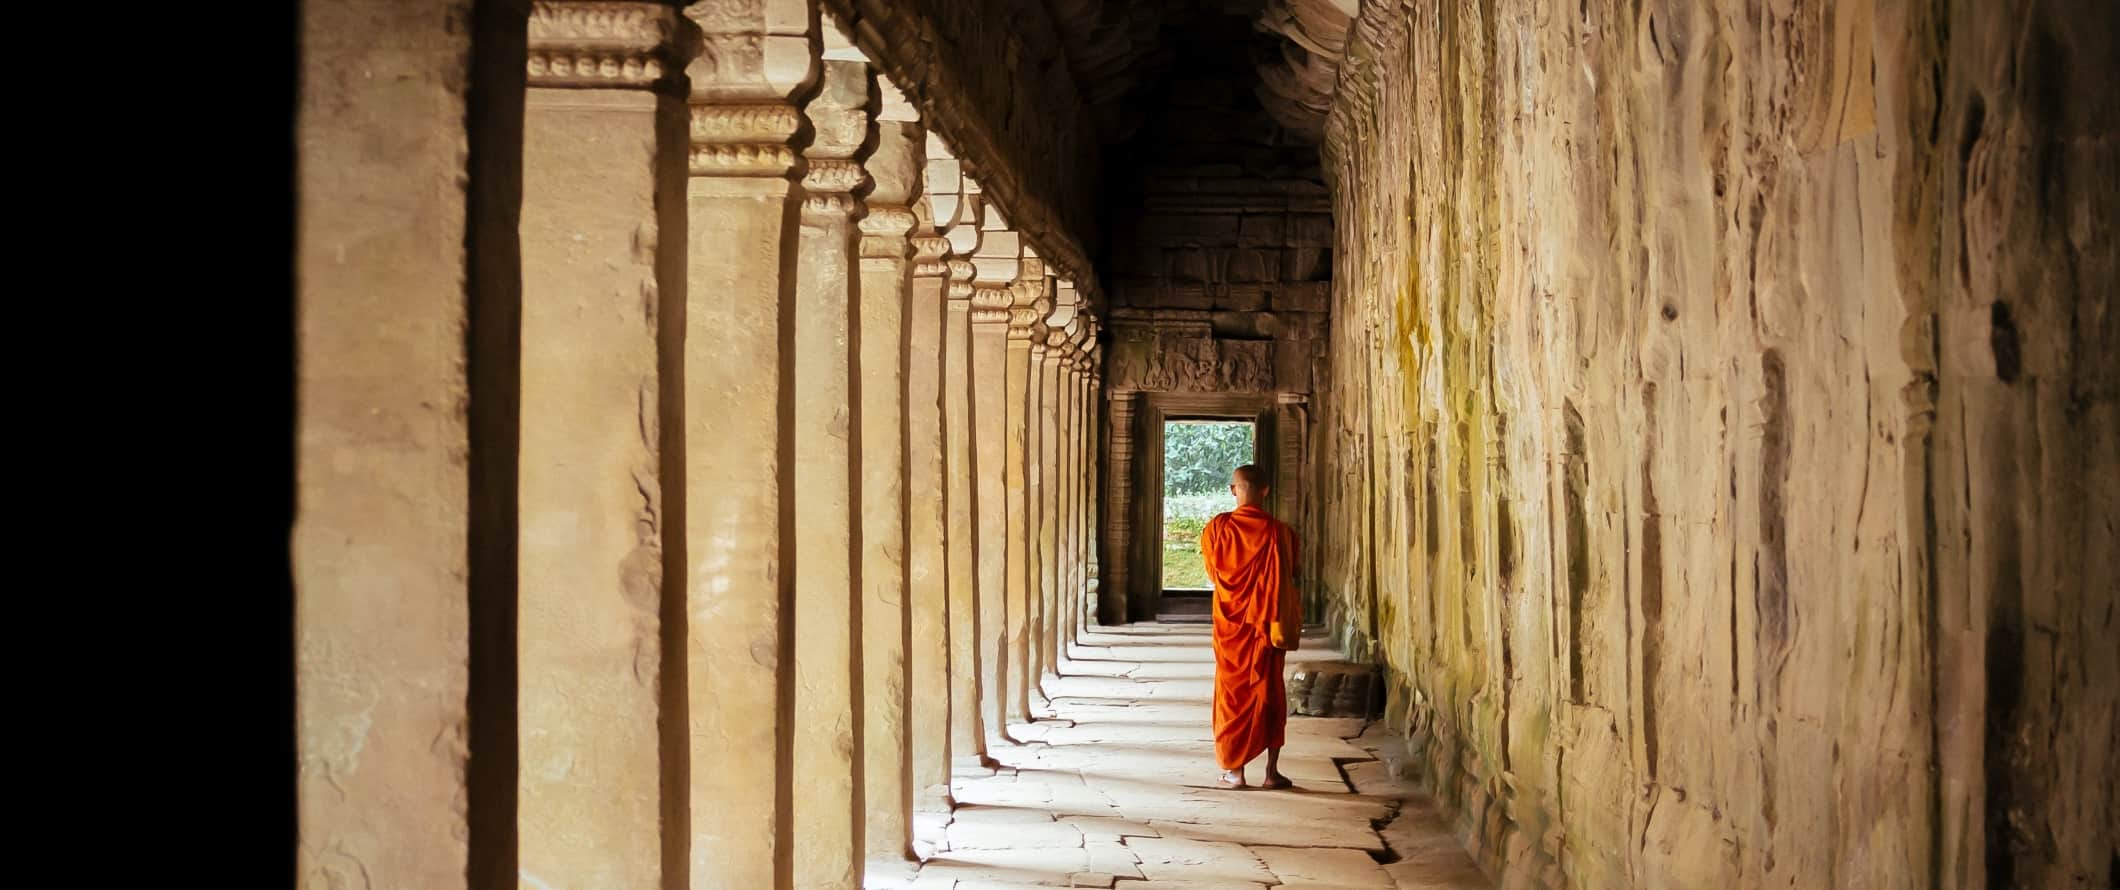 Um monge com uma túnica laranja caminha por um templo